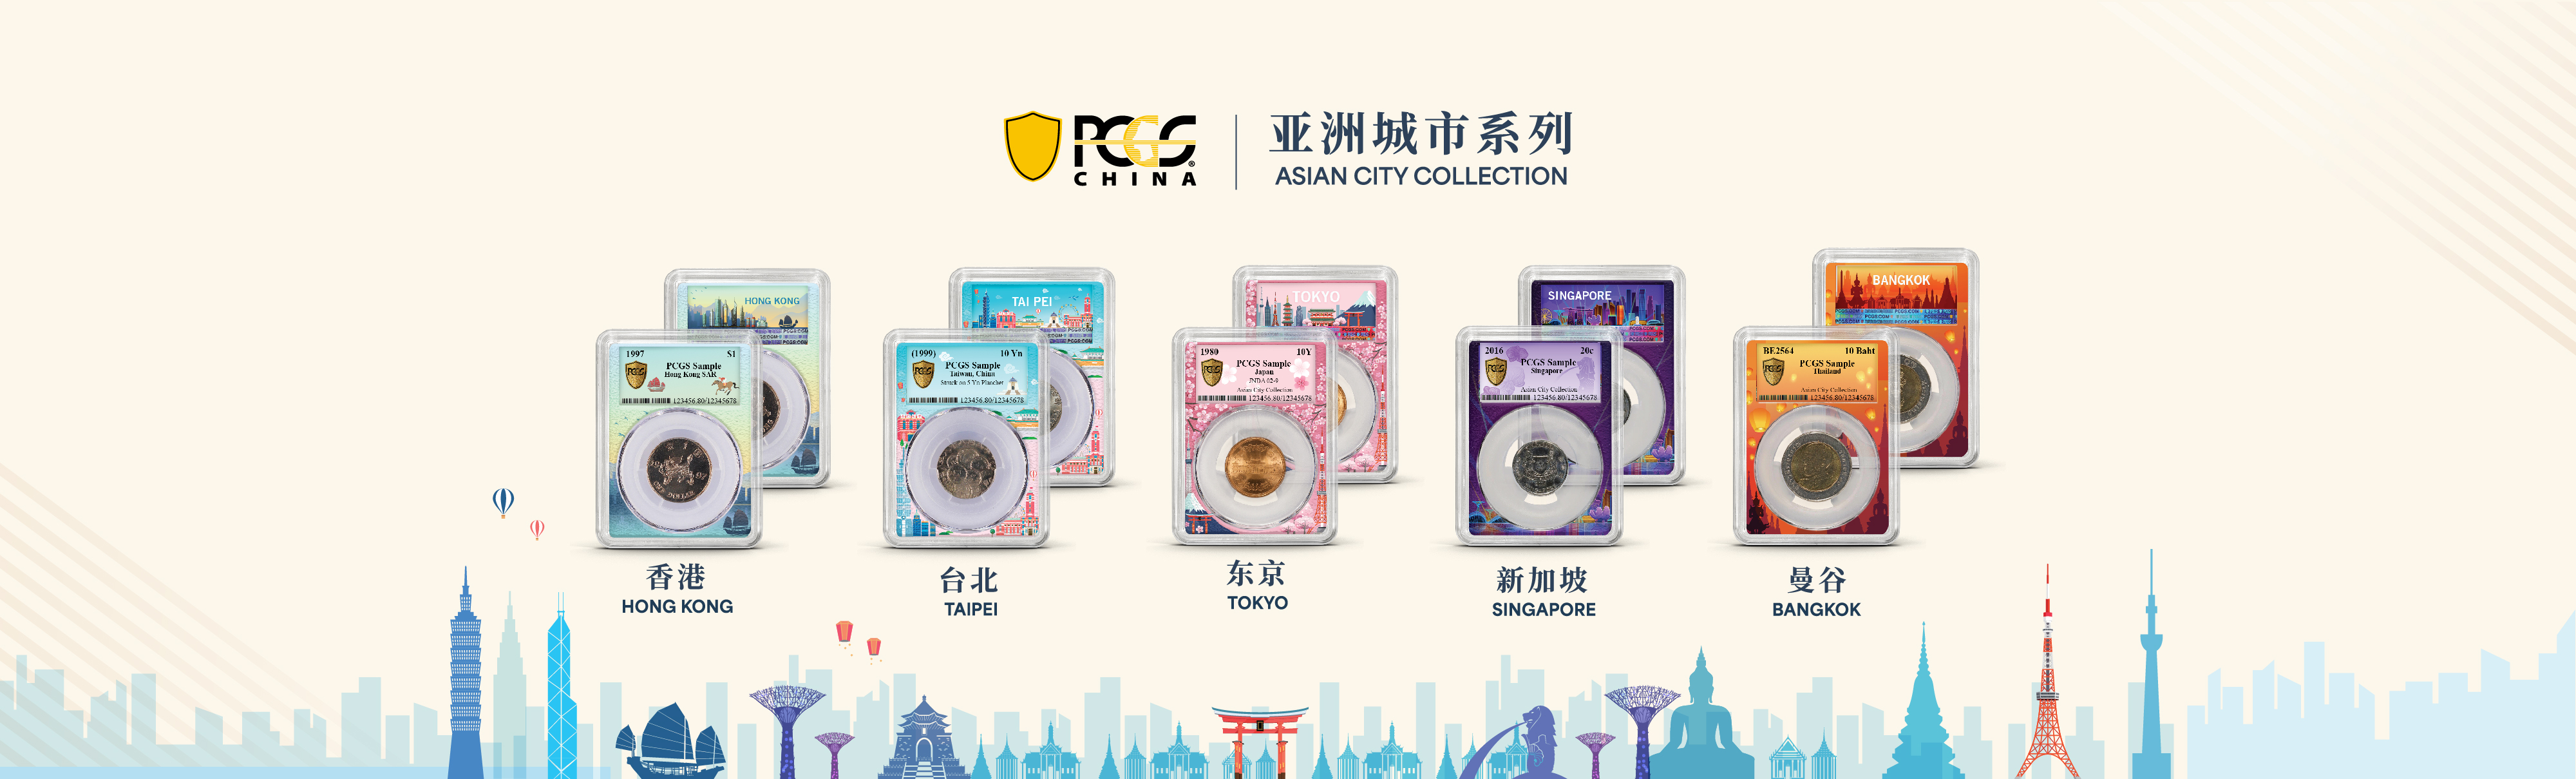 PCGS 中国| 专业钱币分级服务- 全球保证